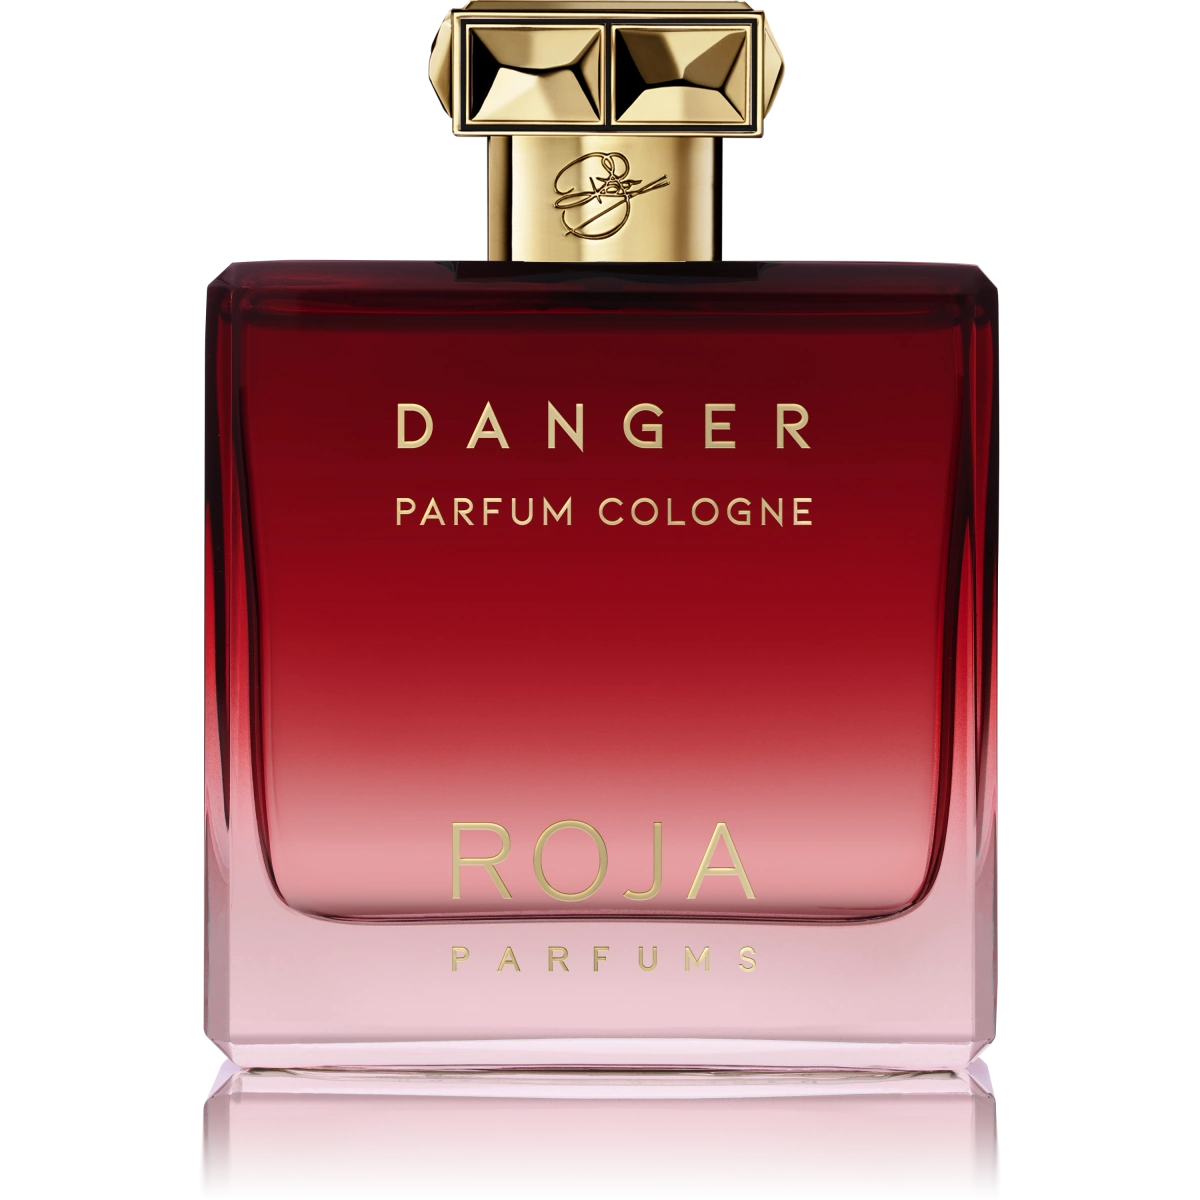 danger-pour-homme-parfum-cologne-roja.webp